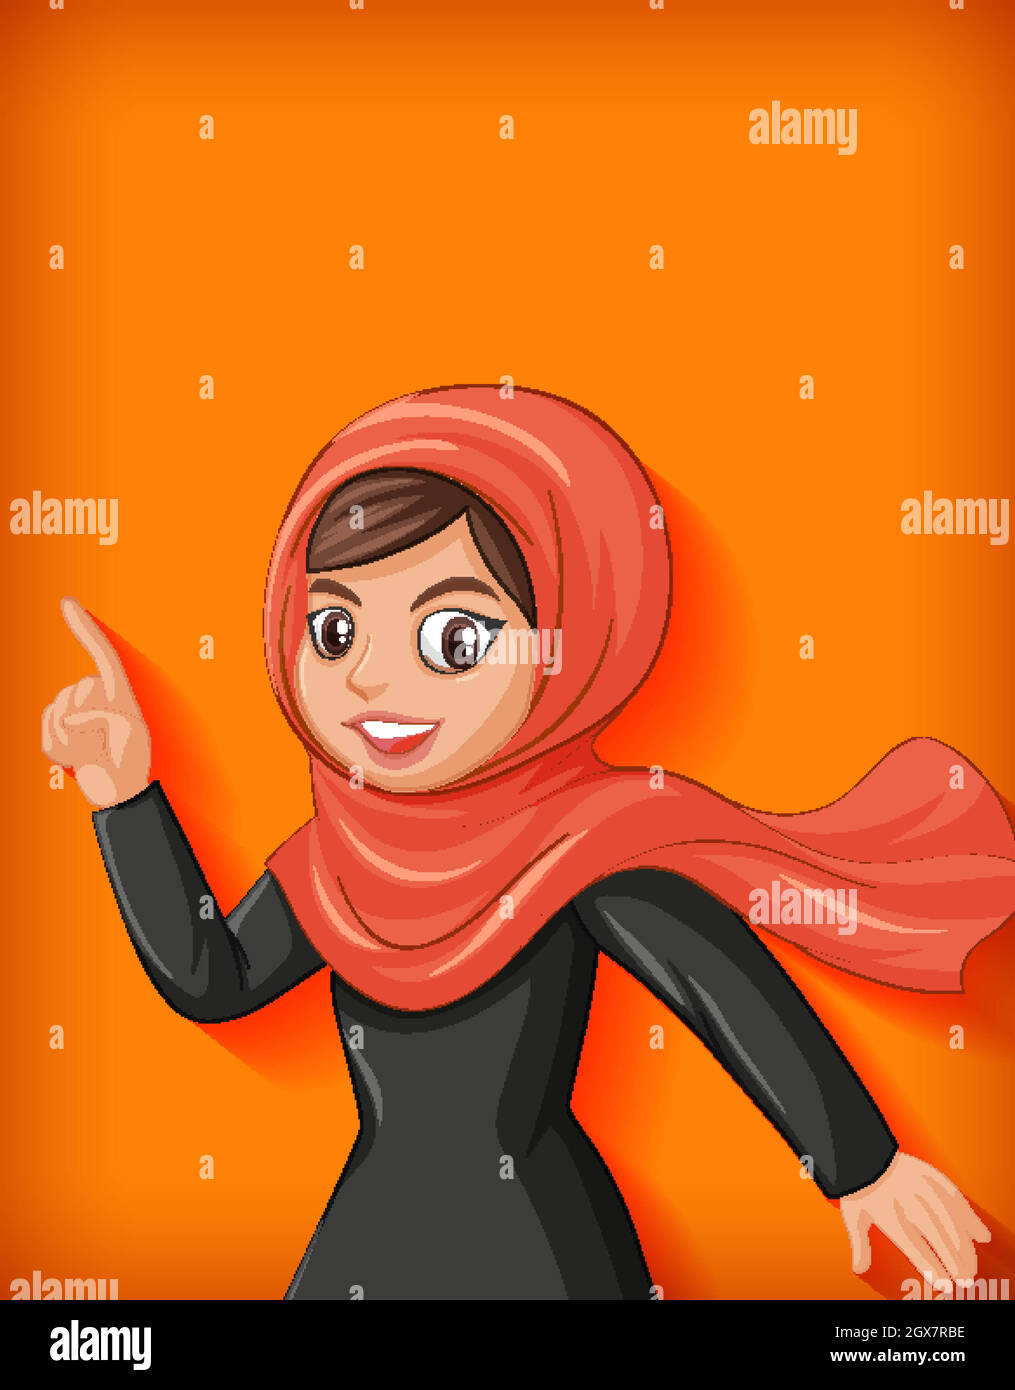 Beautiful arabic lady cartoon character Stock Vector